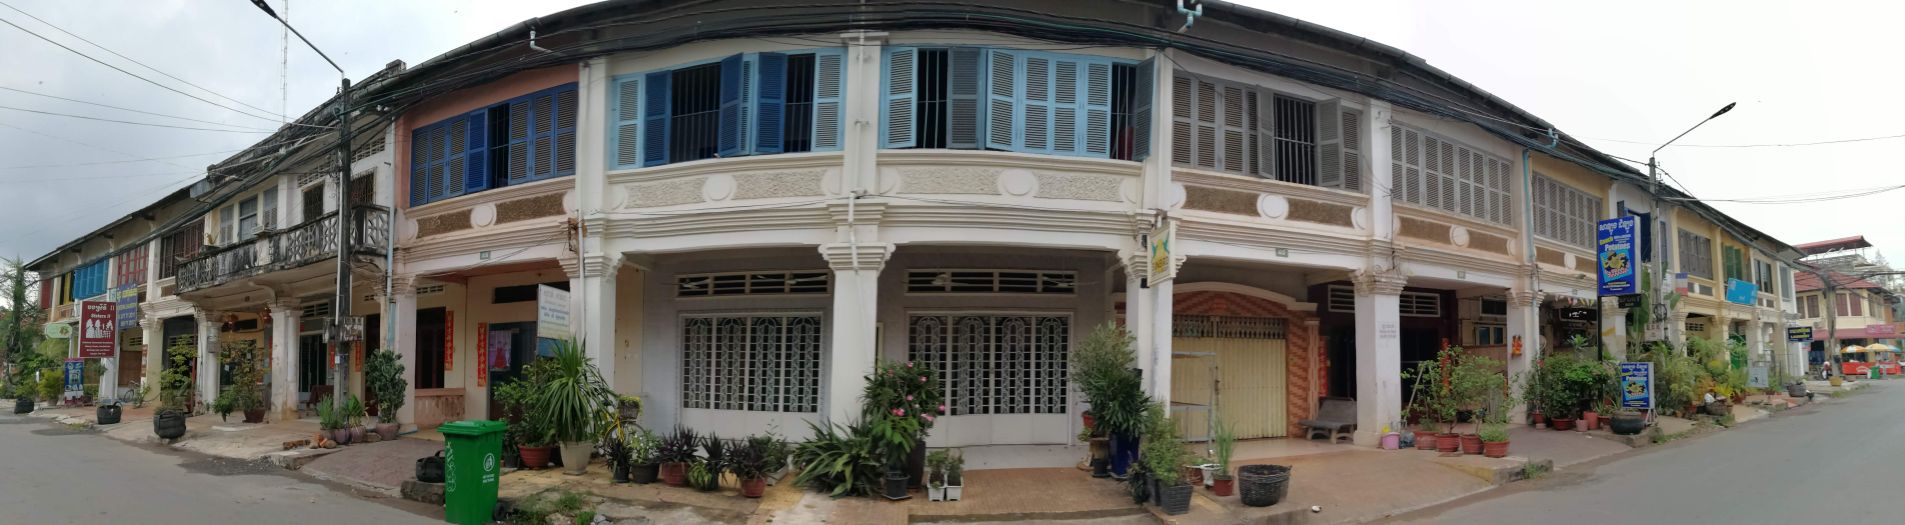 柬埔寨 貢布市 街景